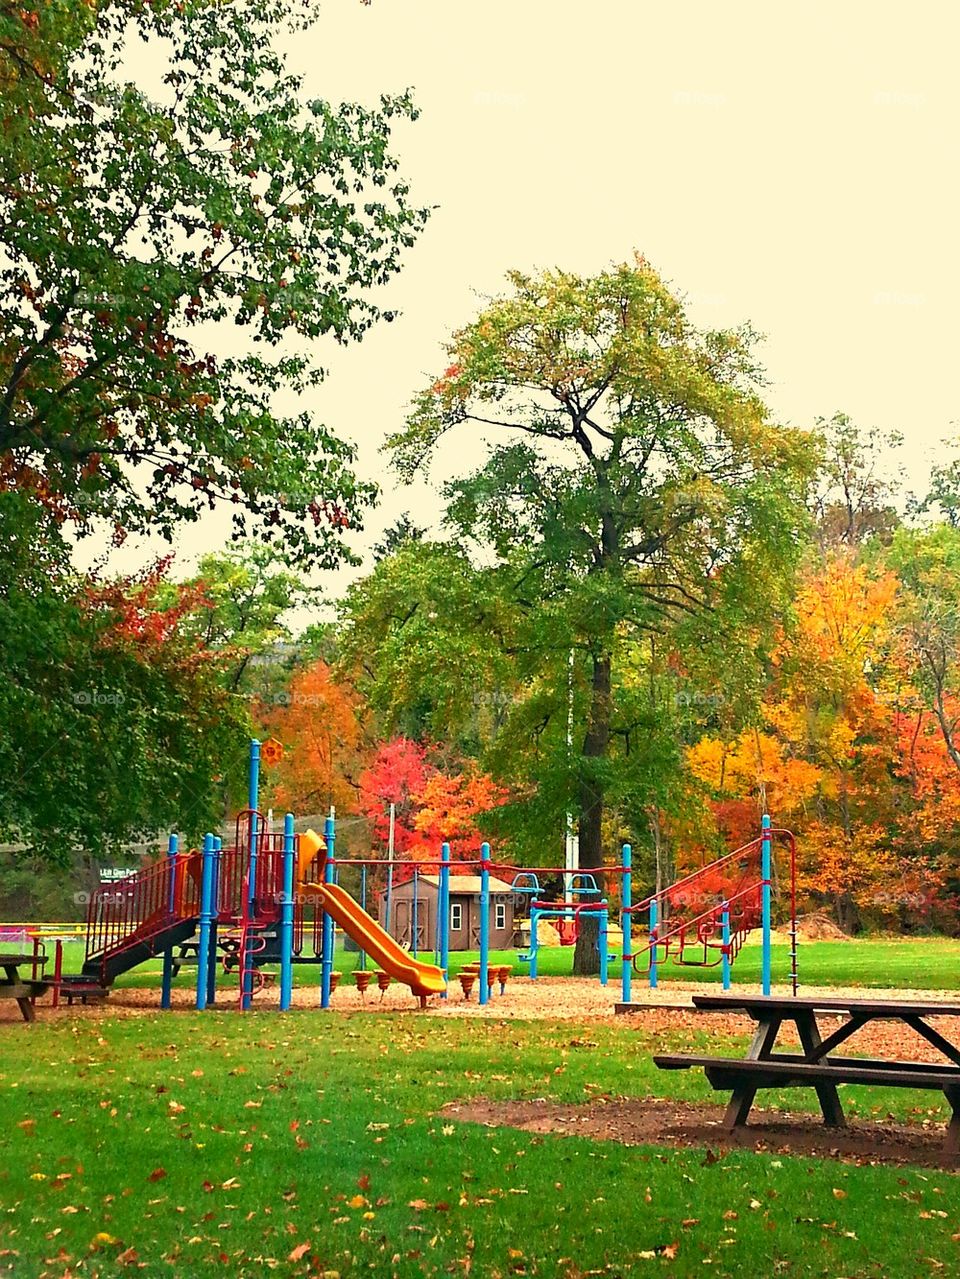 Park in Autumn